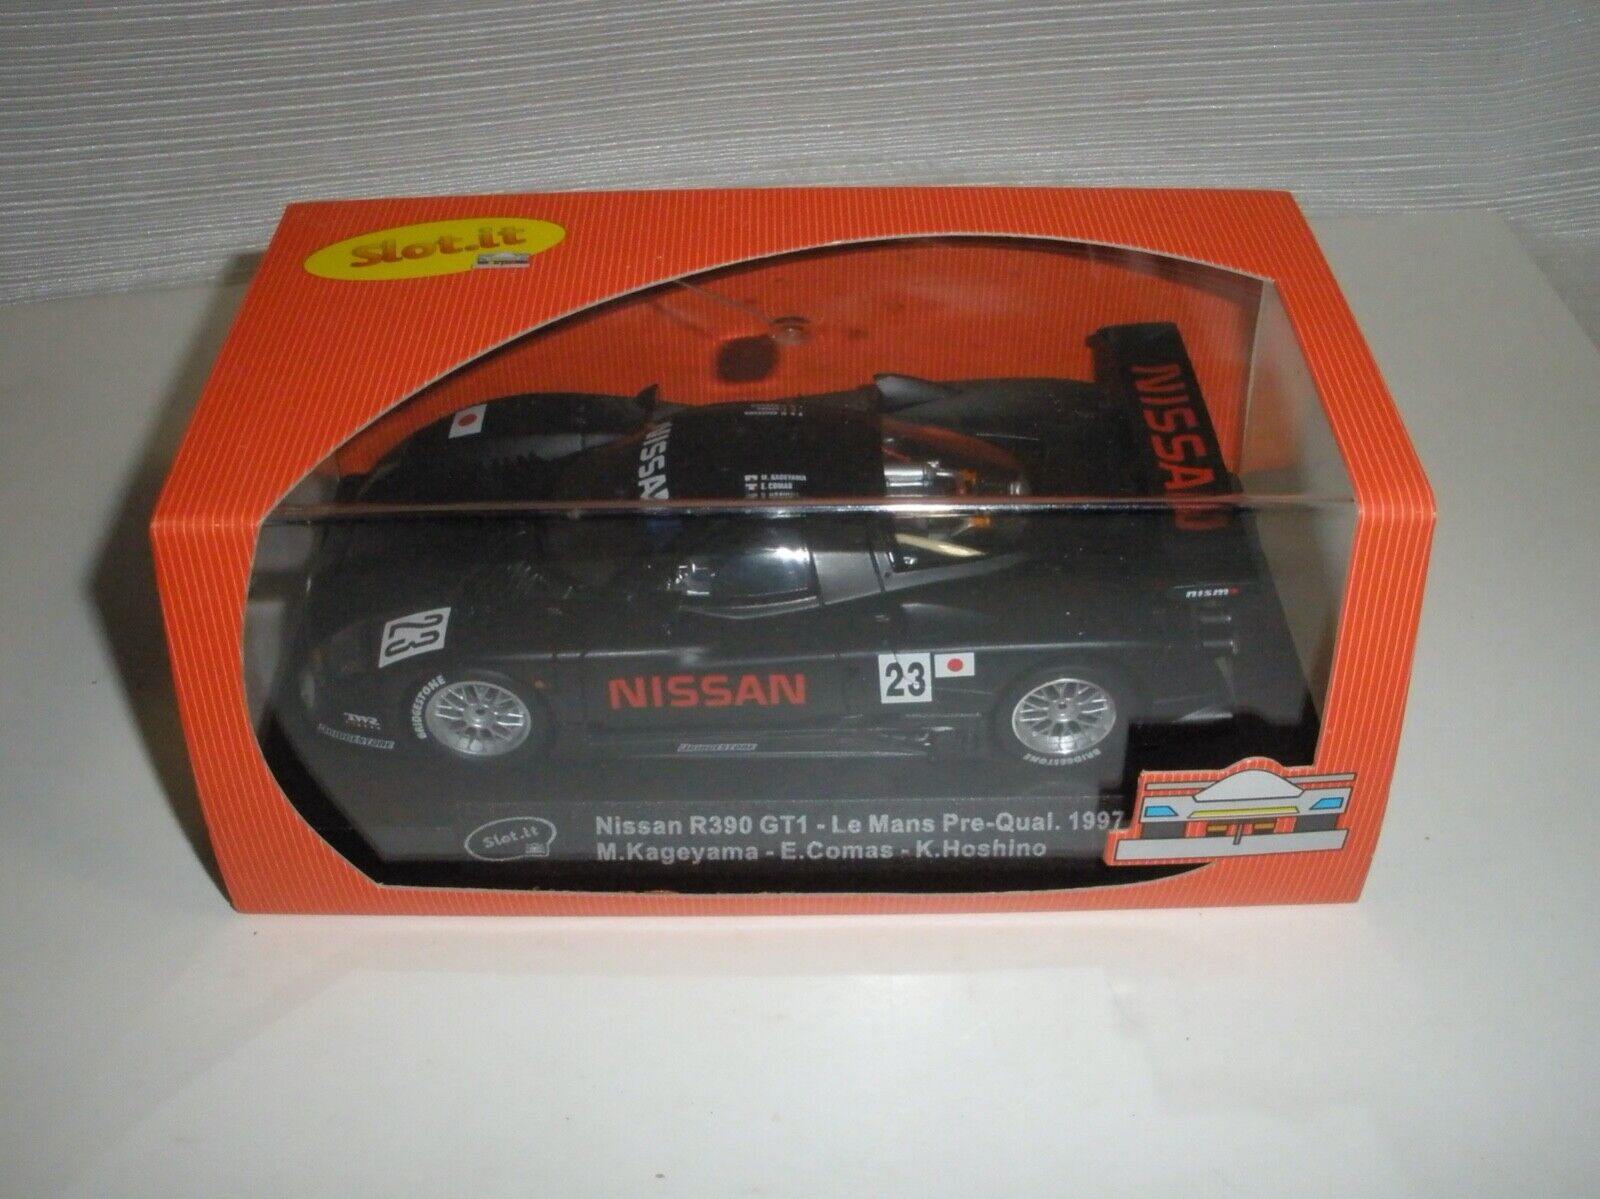 Slot It Nissan R390 GT1 Le Mans 1/32 slot car Collectors Quality Condition Zeer populair, explosief kopen